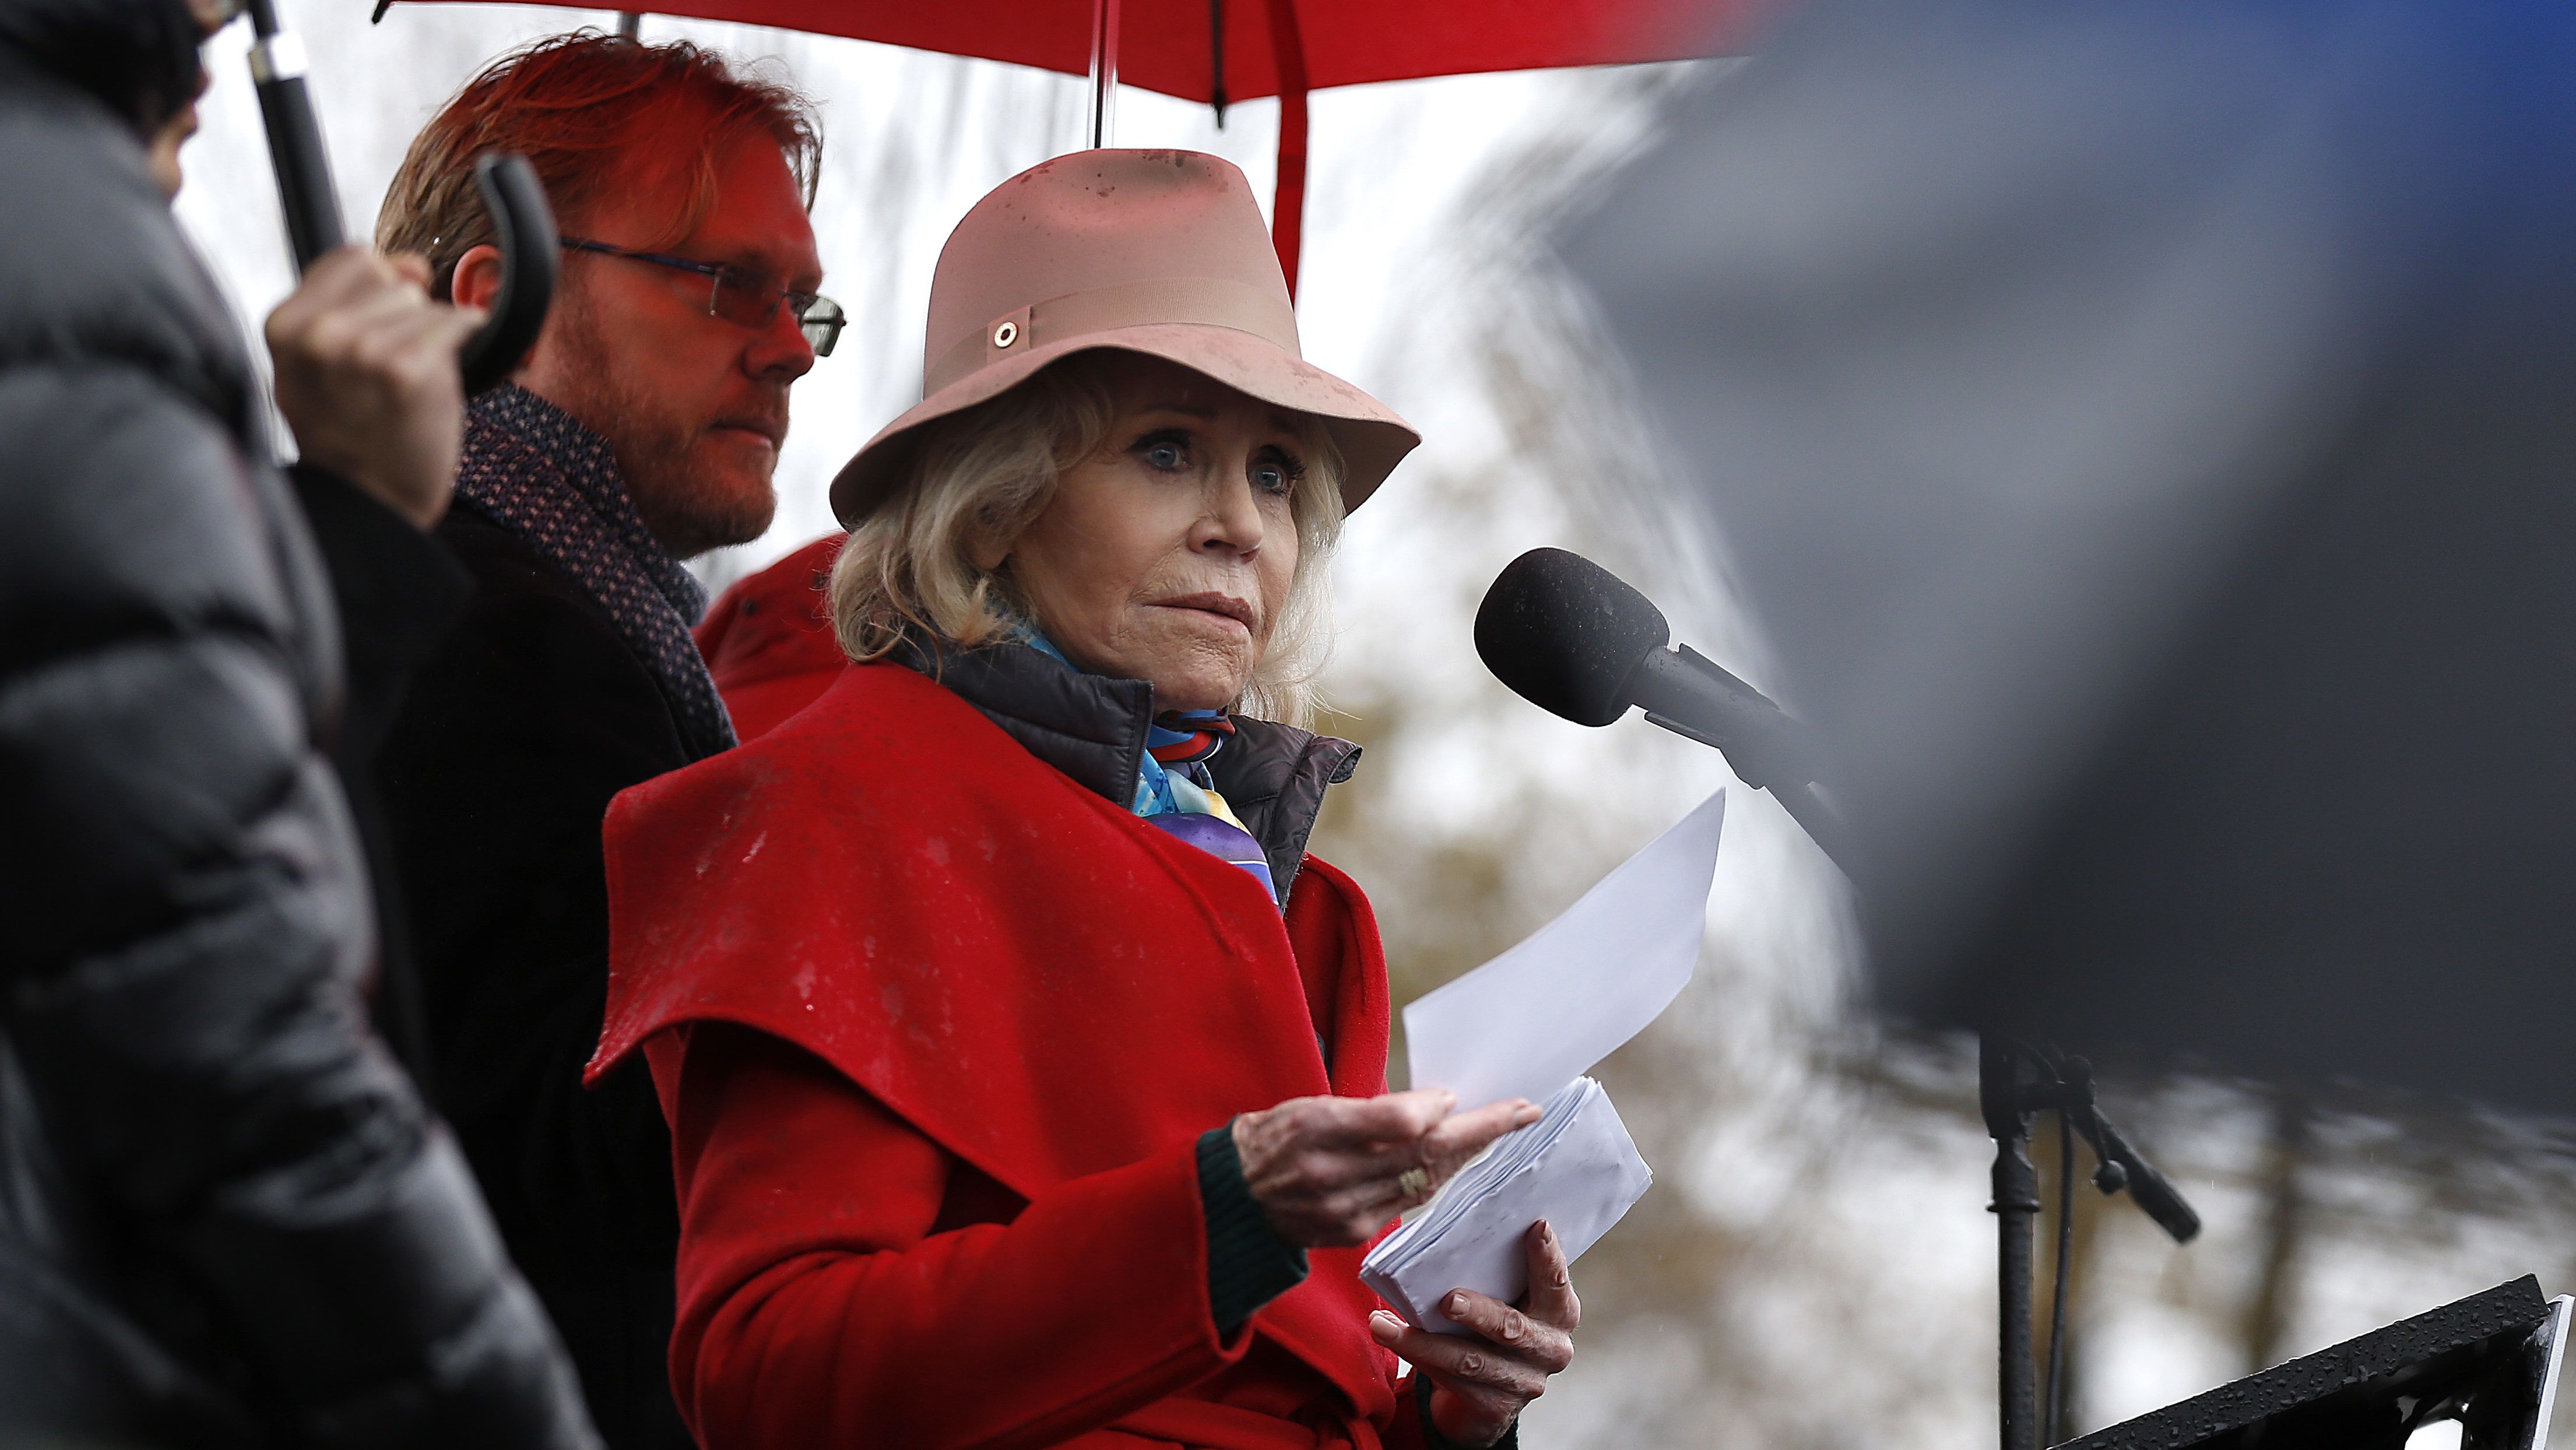 Jane Fonda trükkje a klímatüntetésen: míg a többieket őrizetbe vették, ő felszaladt a Capitolium erkélyére pfújolni